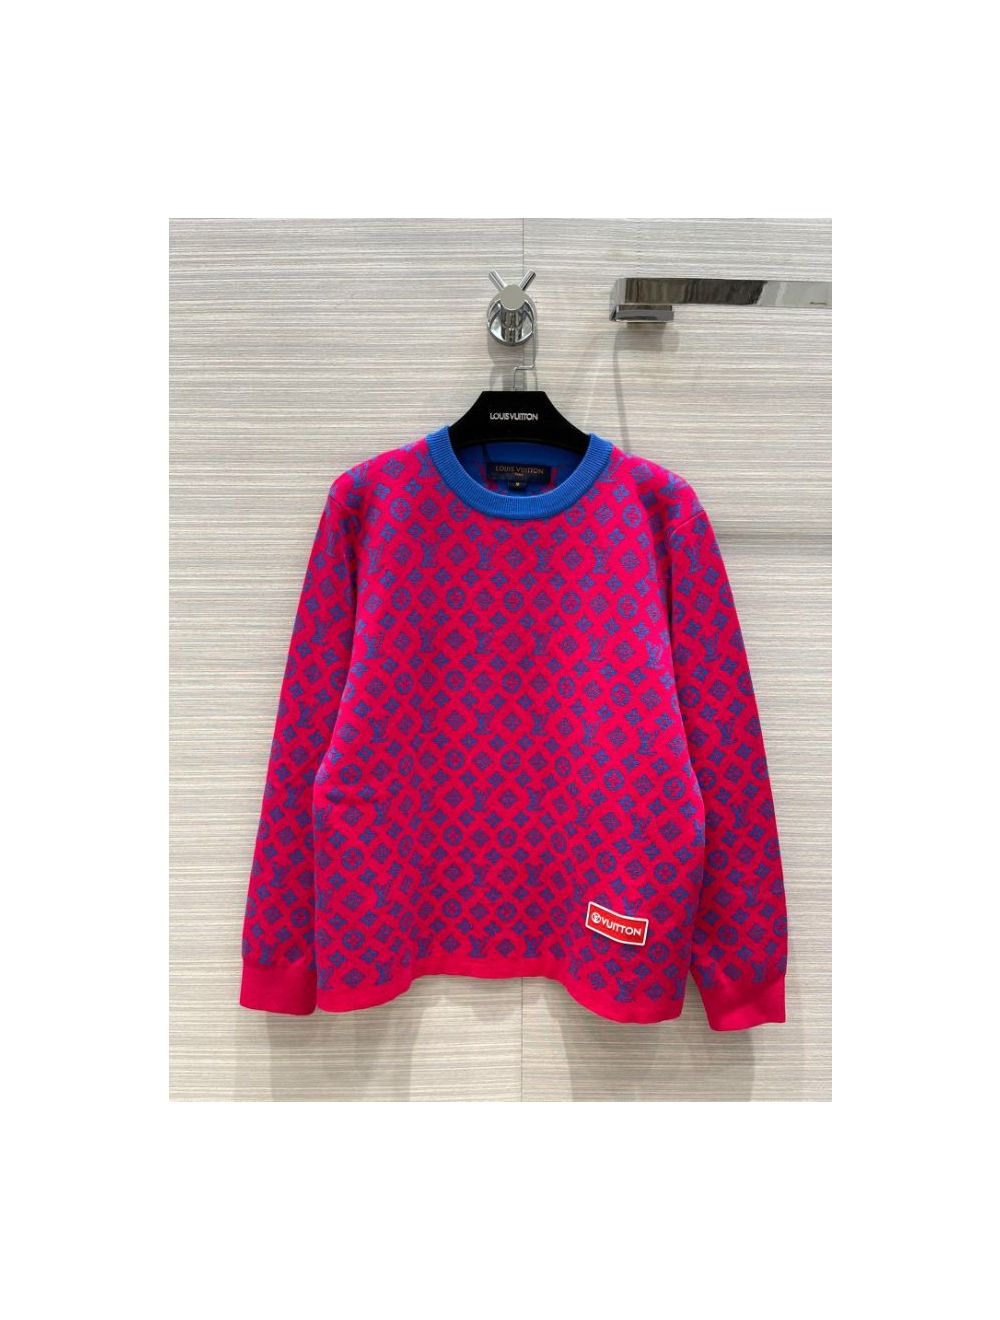 W2C] Louis Vuitton Studio Jacquard Sweater : r/DesignerReps